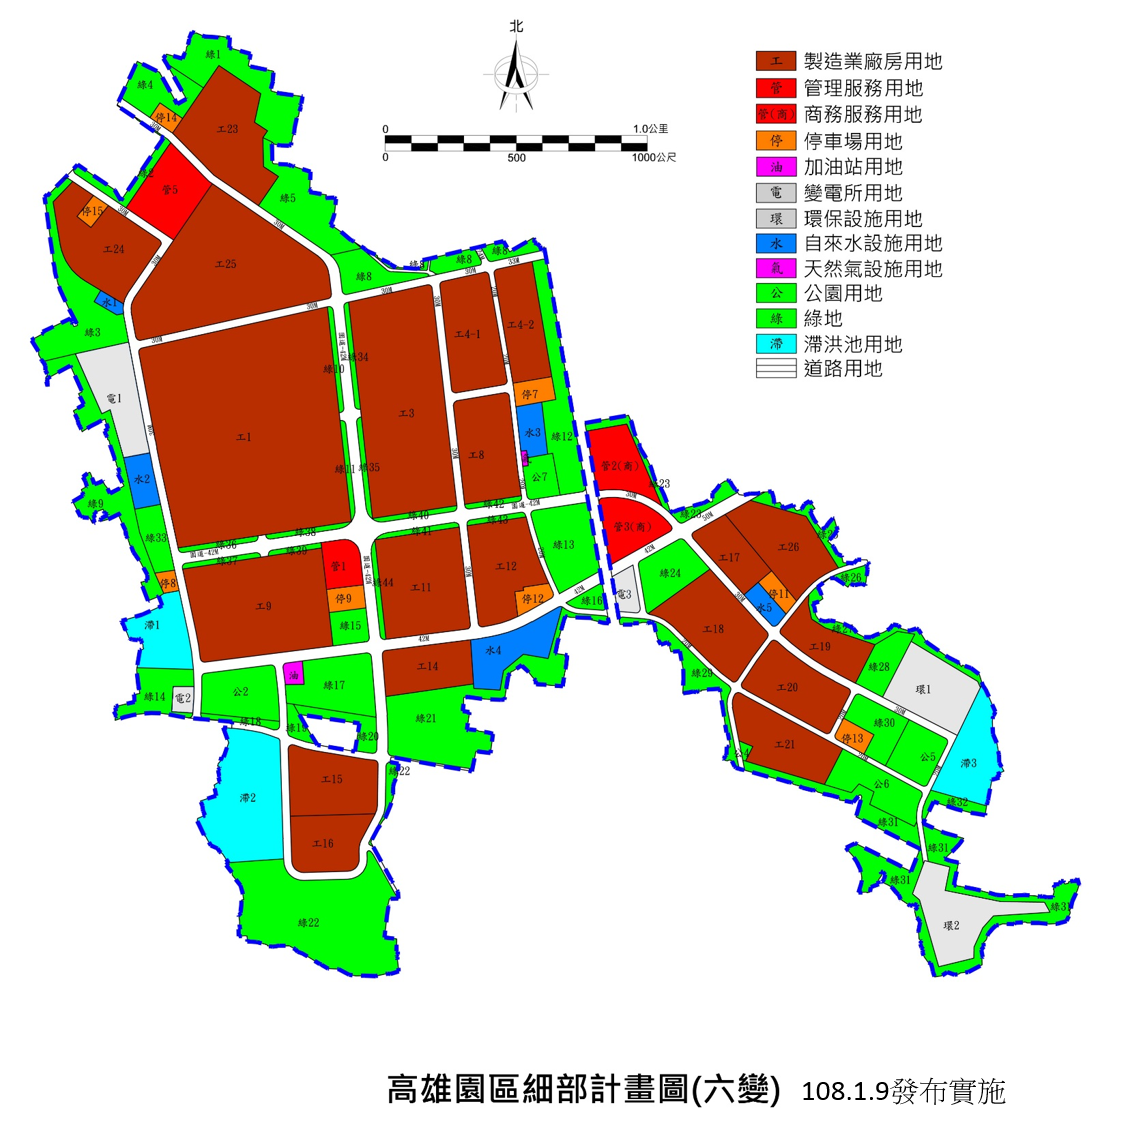 高雄園區細部計畫示意圖，用以表示高雄園區土地都市計畫之土地使用分區規劃情形。